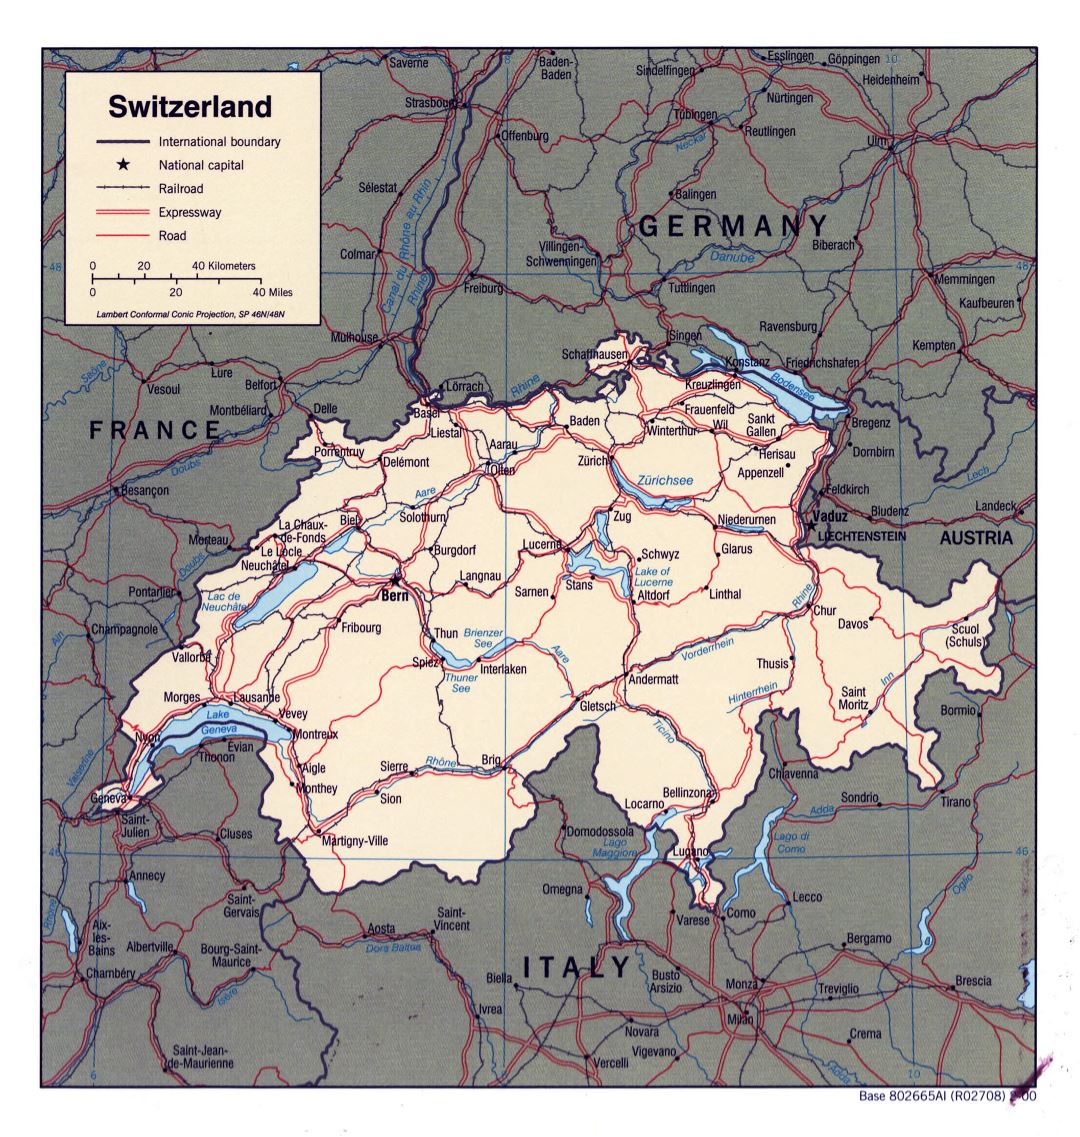 Grande detallado mapa político de Suiza - 2000